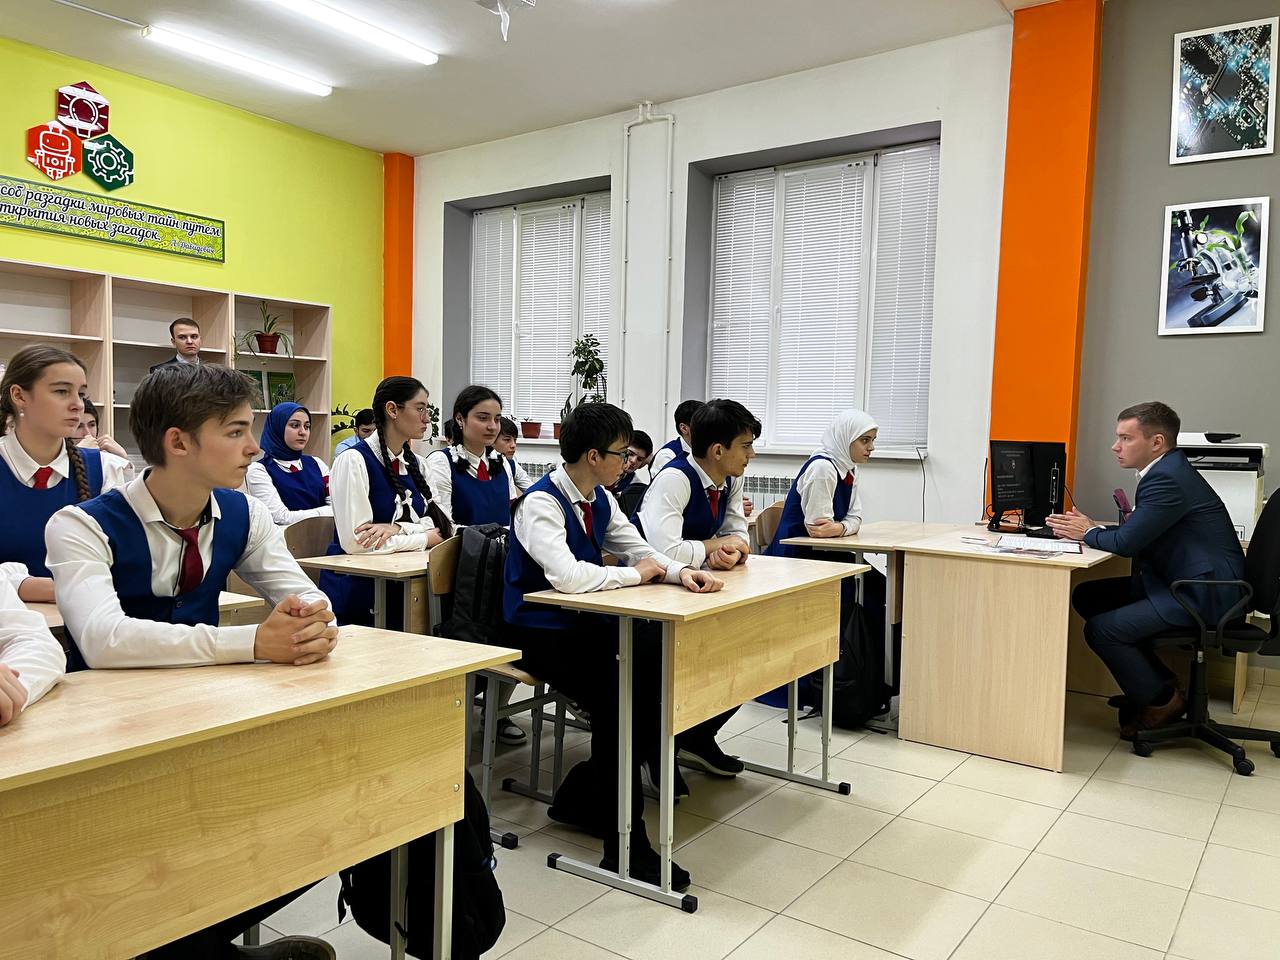 5 декабря в нашем Лицее прошла  встреча учащихся выпускных классов с представителями  Академии Федеральной службы охраны Российской Федерации.